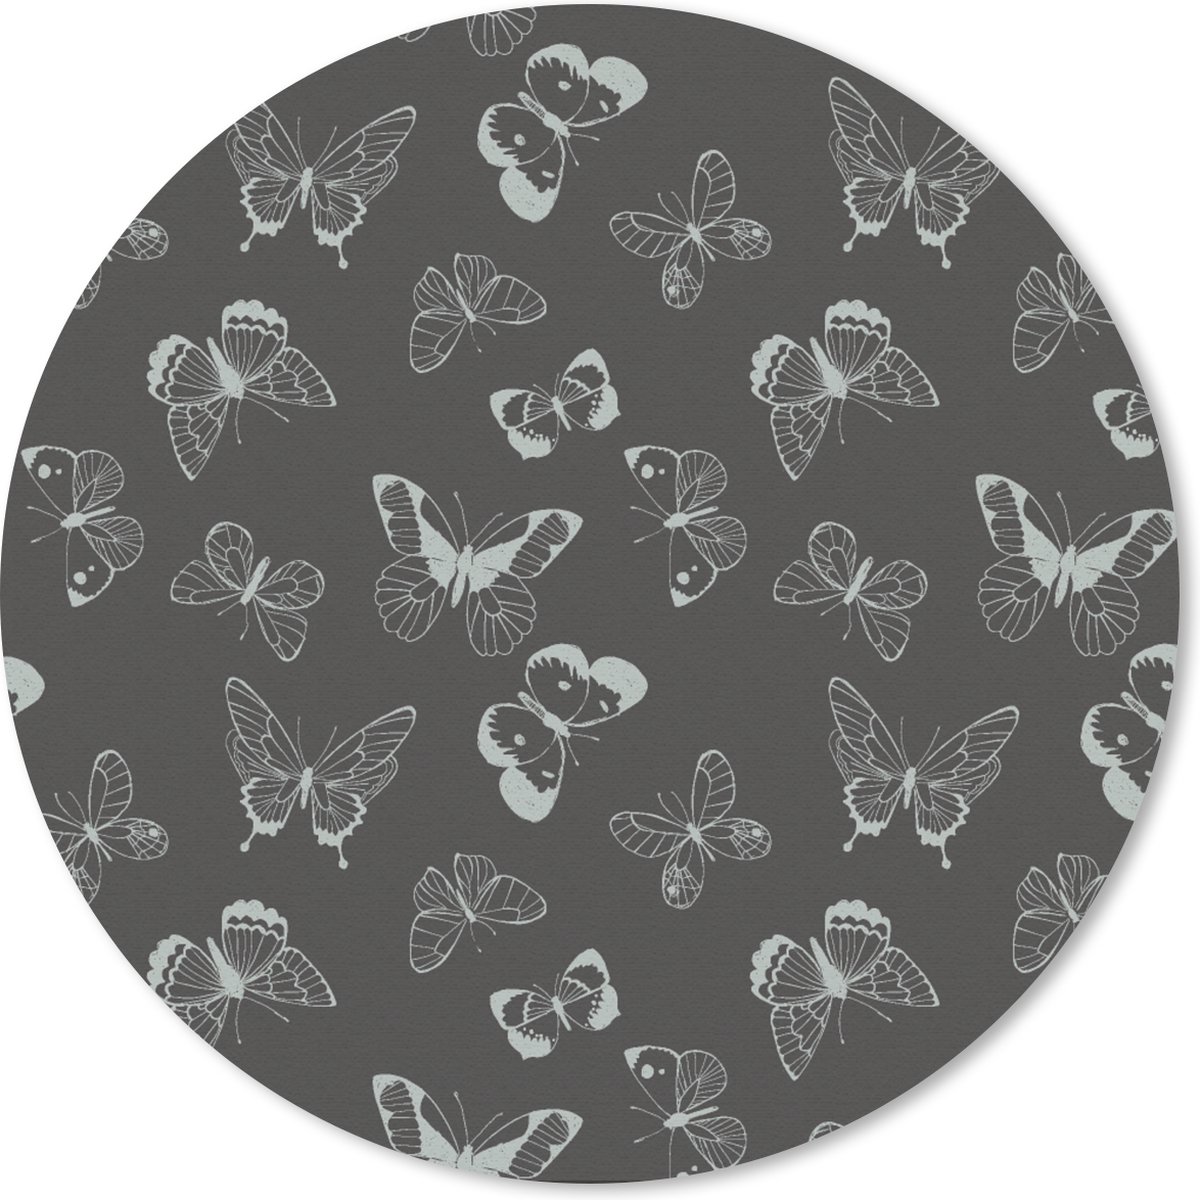 Muismat - Mousepad - Rond - Vlinders - Retro - Design - 20x20 cm - Ronde muismat